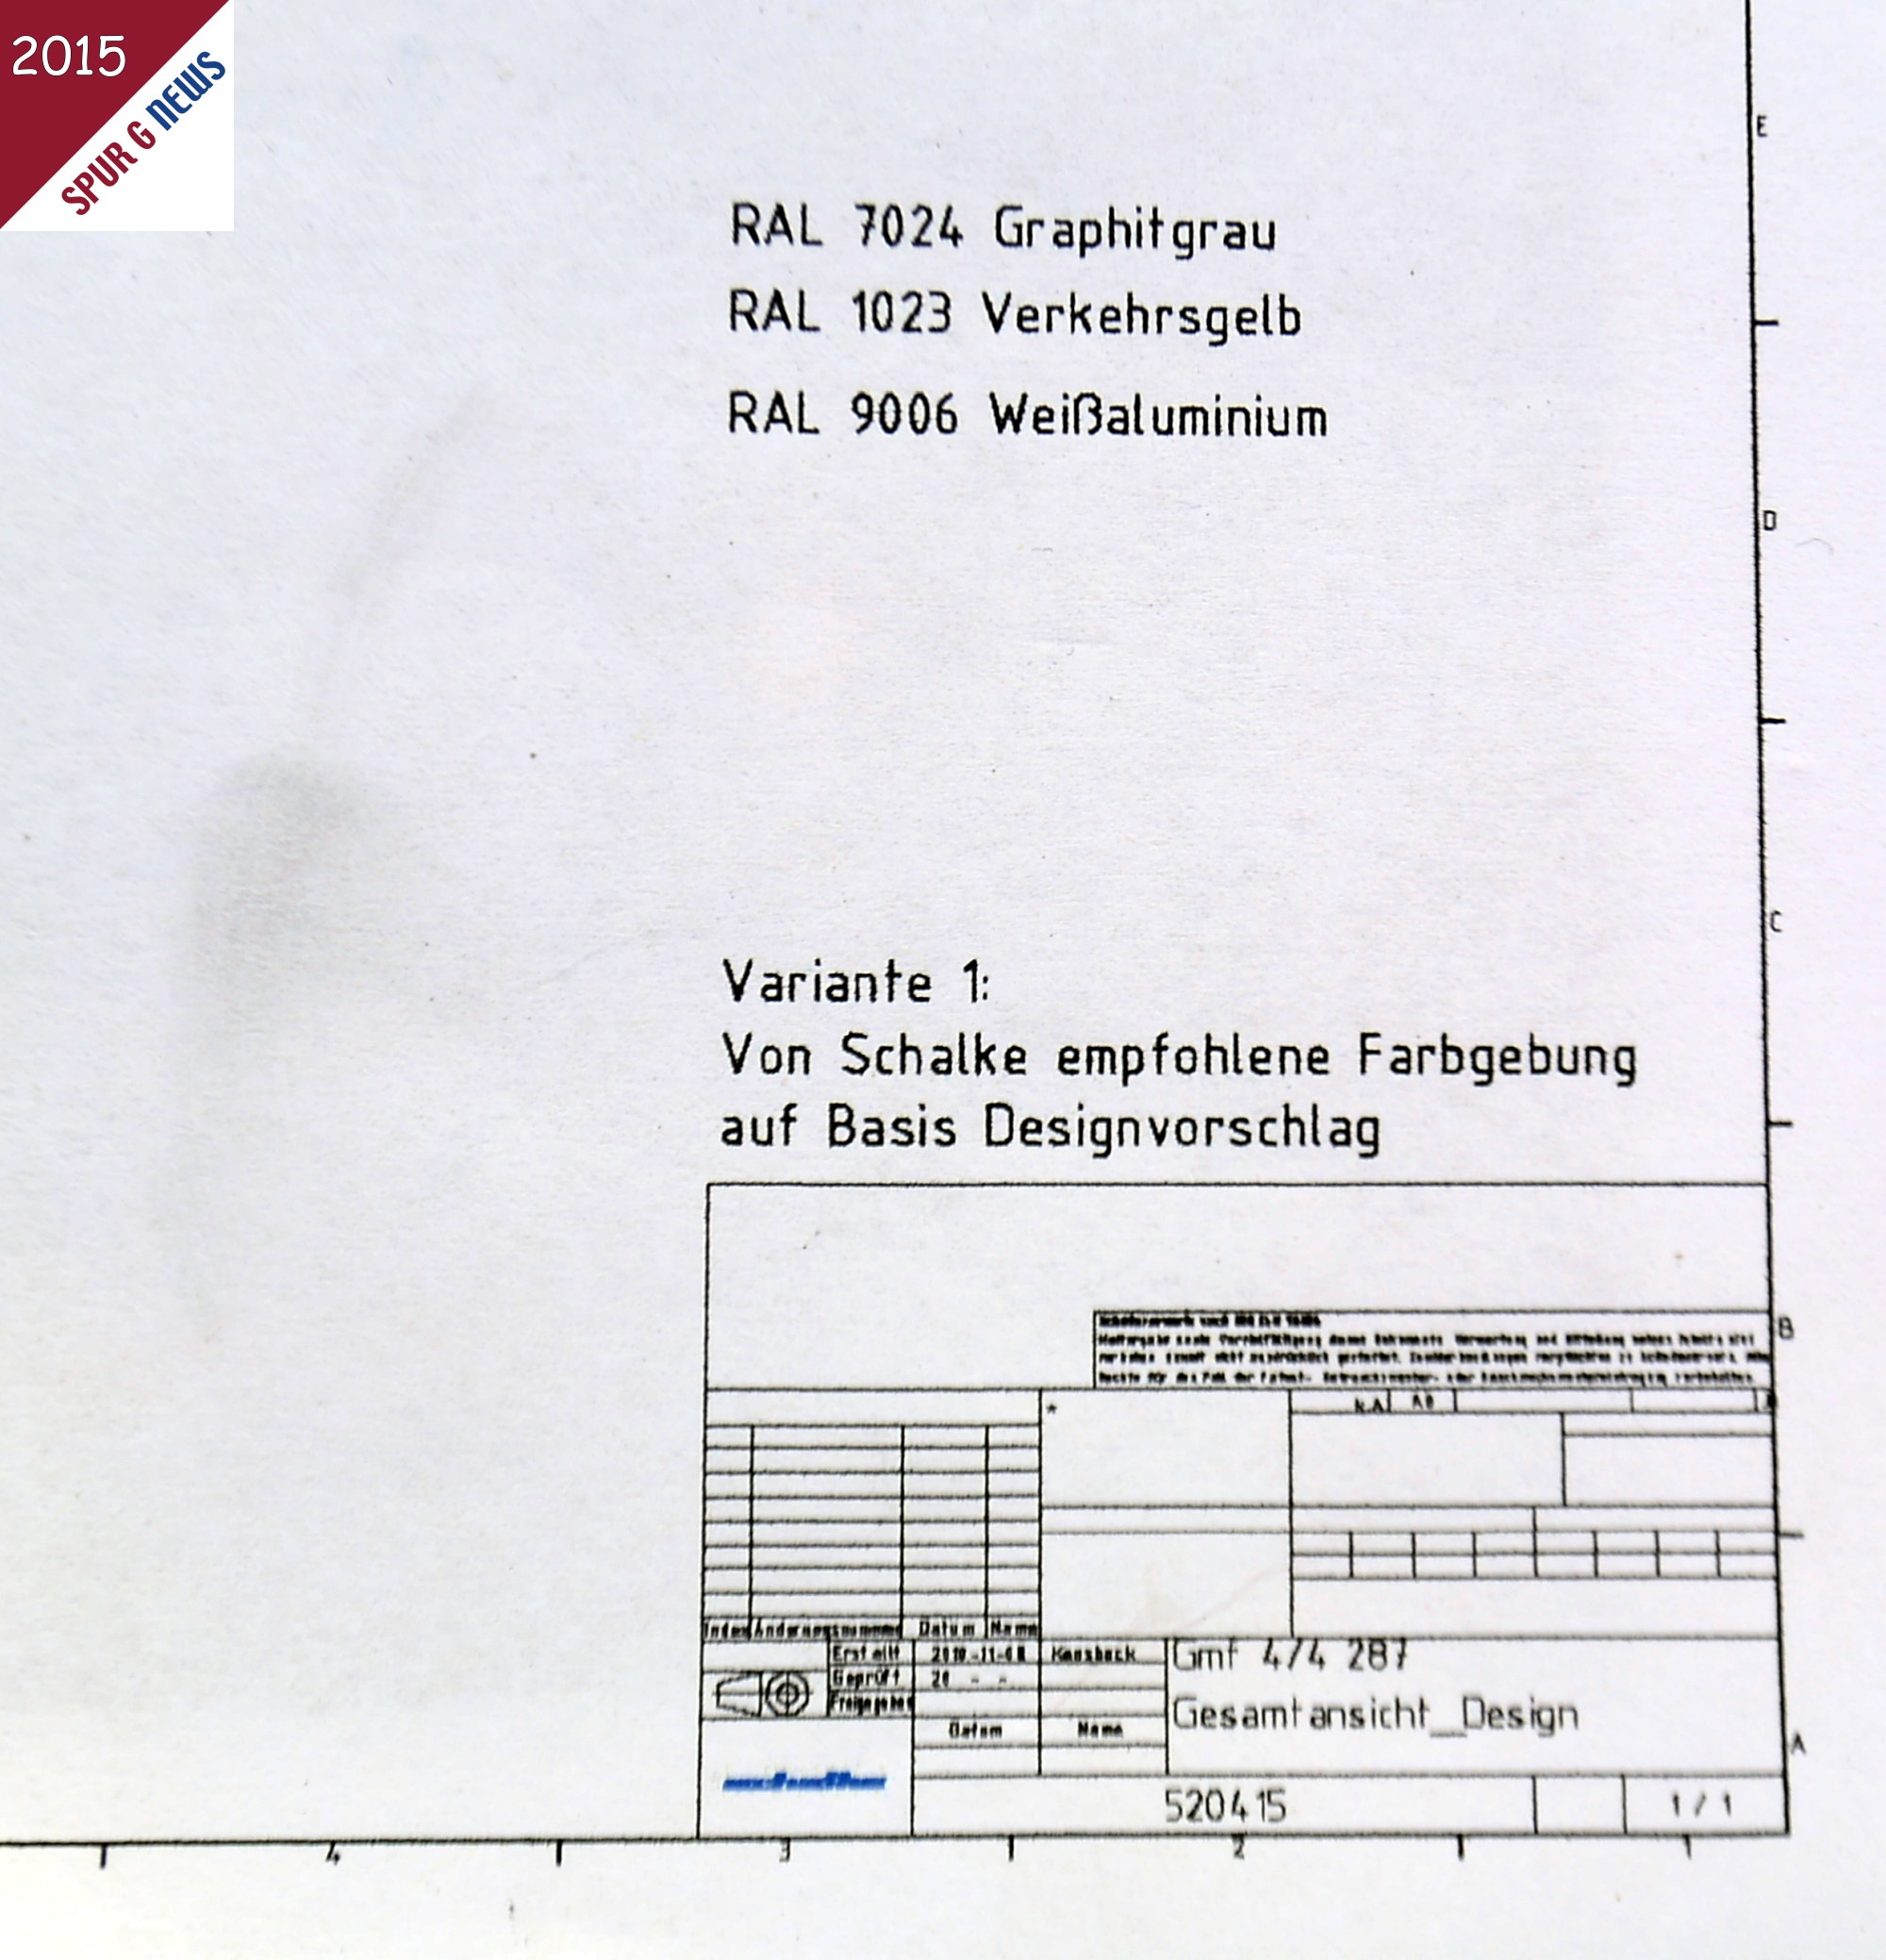 Bild rechts zeigt den Ausschnitt aus dem Basis Designvorschlag fr die Farbgebung der vier Lokomotiven Nr. 23401, 23402, 23403 und 23404 fr die RhB. 